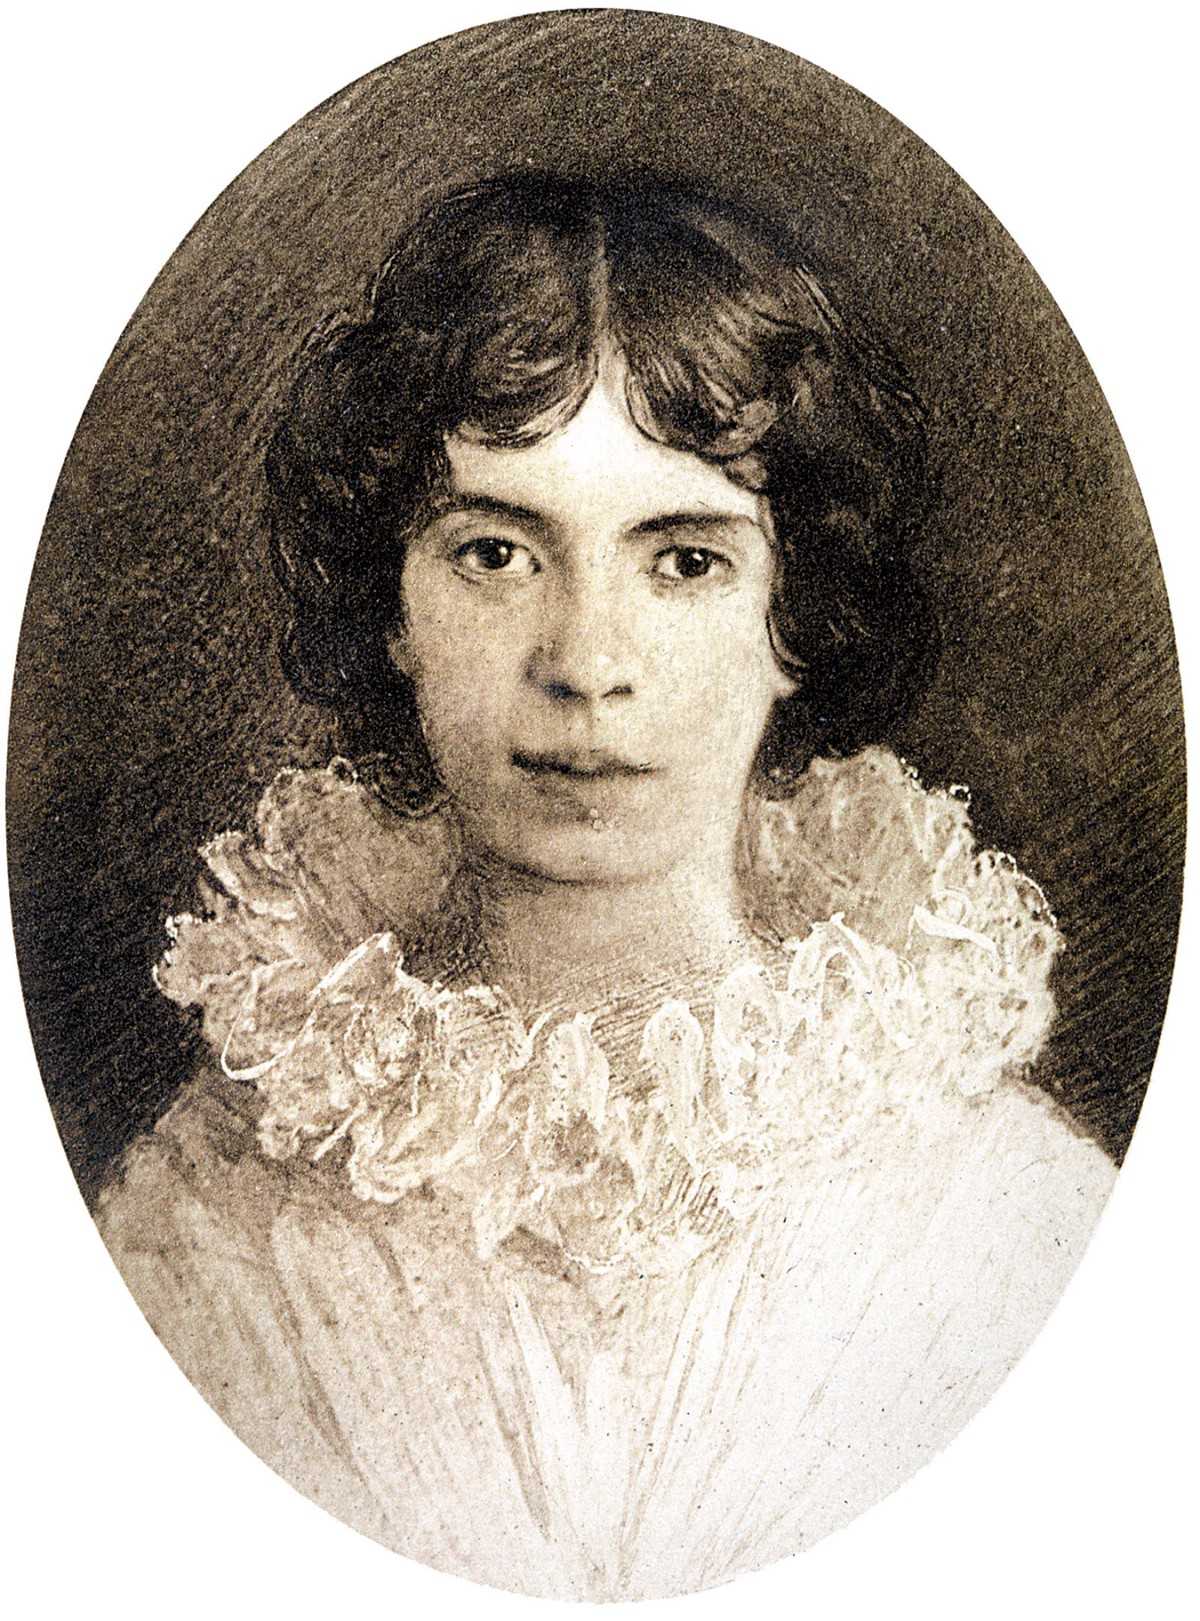 Ларисса андерсен - любимица вертинского и поэтесса русской эмиграции в харбине, прожившая более 100 лет